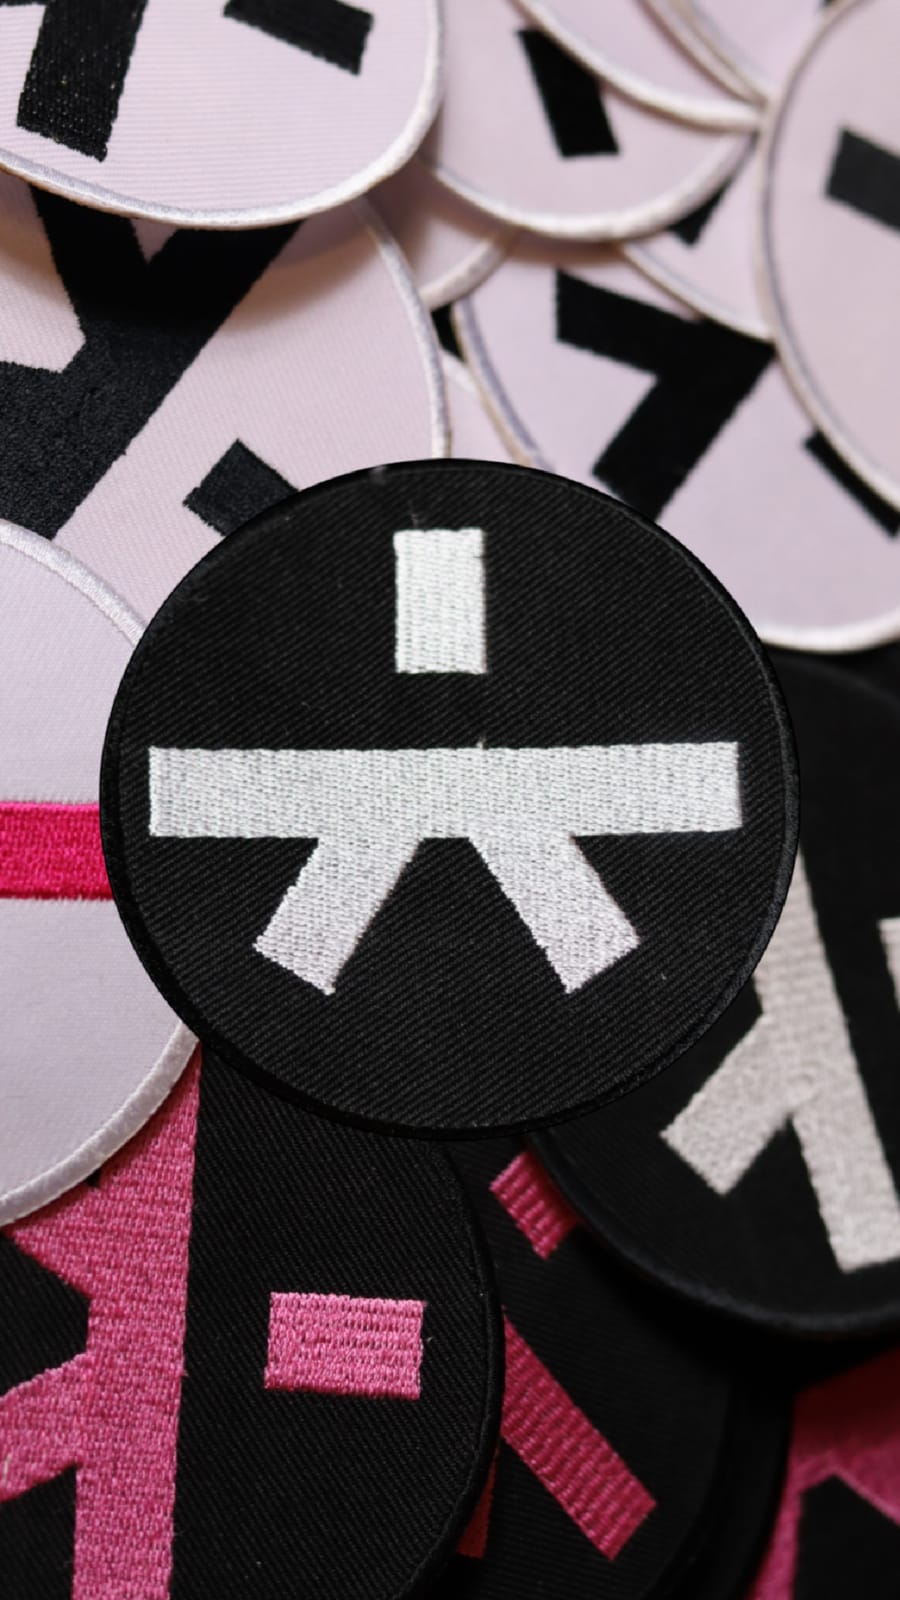 Liten patch för framsidan på dräkten, finns med vit och svart bakgrund med färgerna vit, svart och rosa.